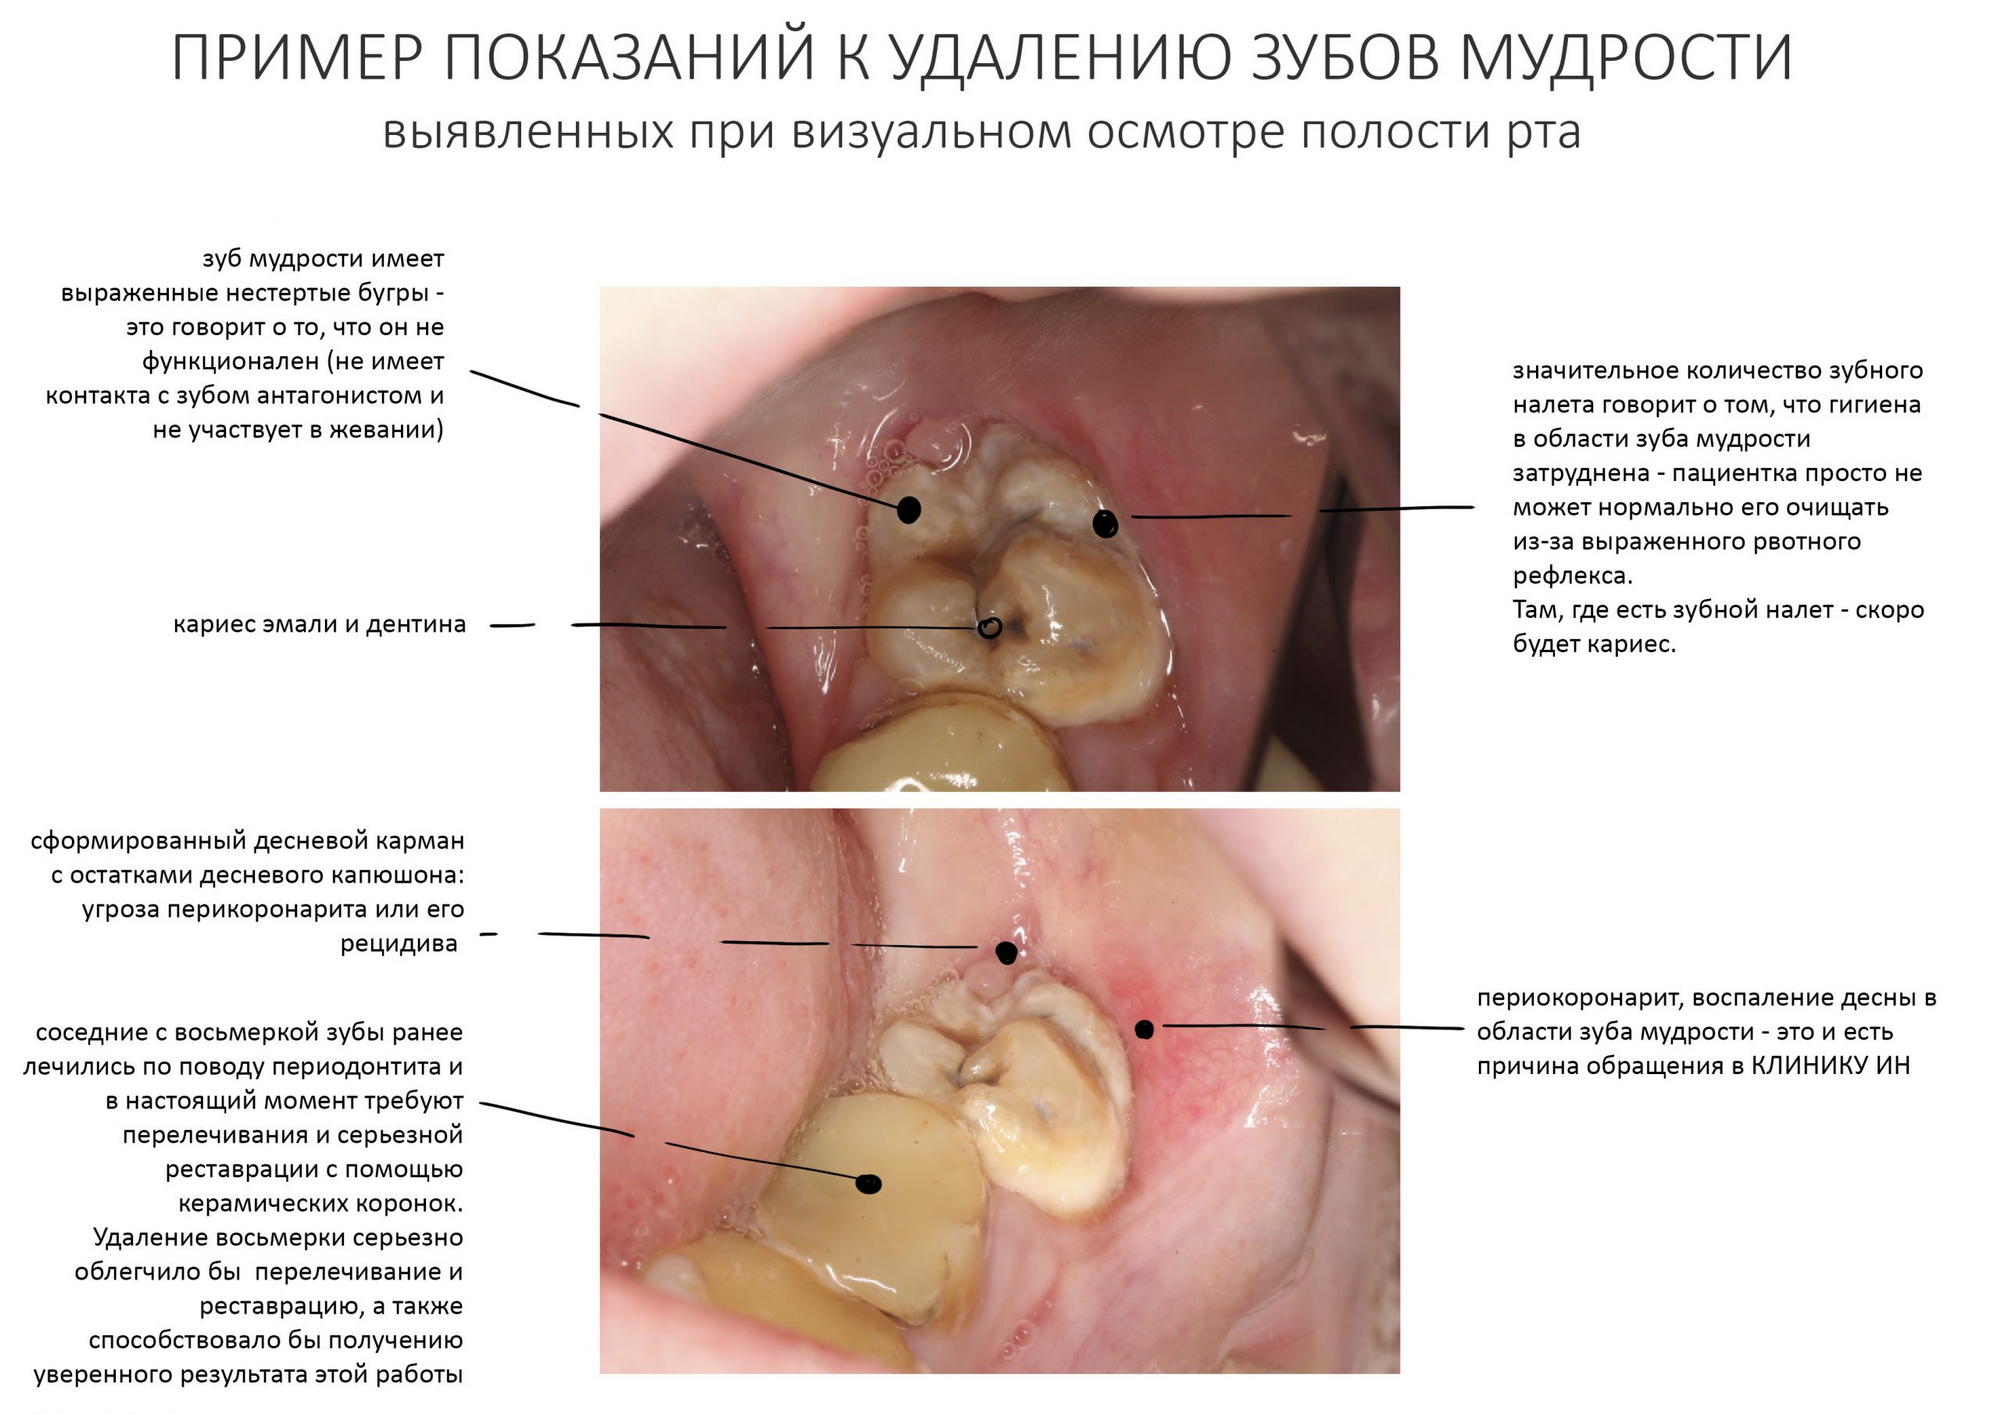 Что делать если удалили зуб? Что нельзя делать? | Kurtova Dental Clinic